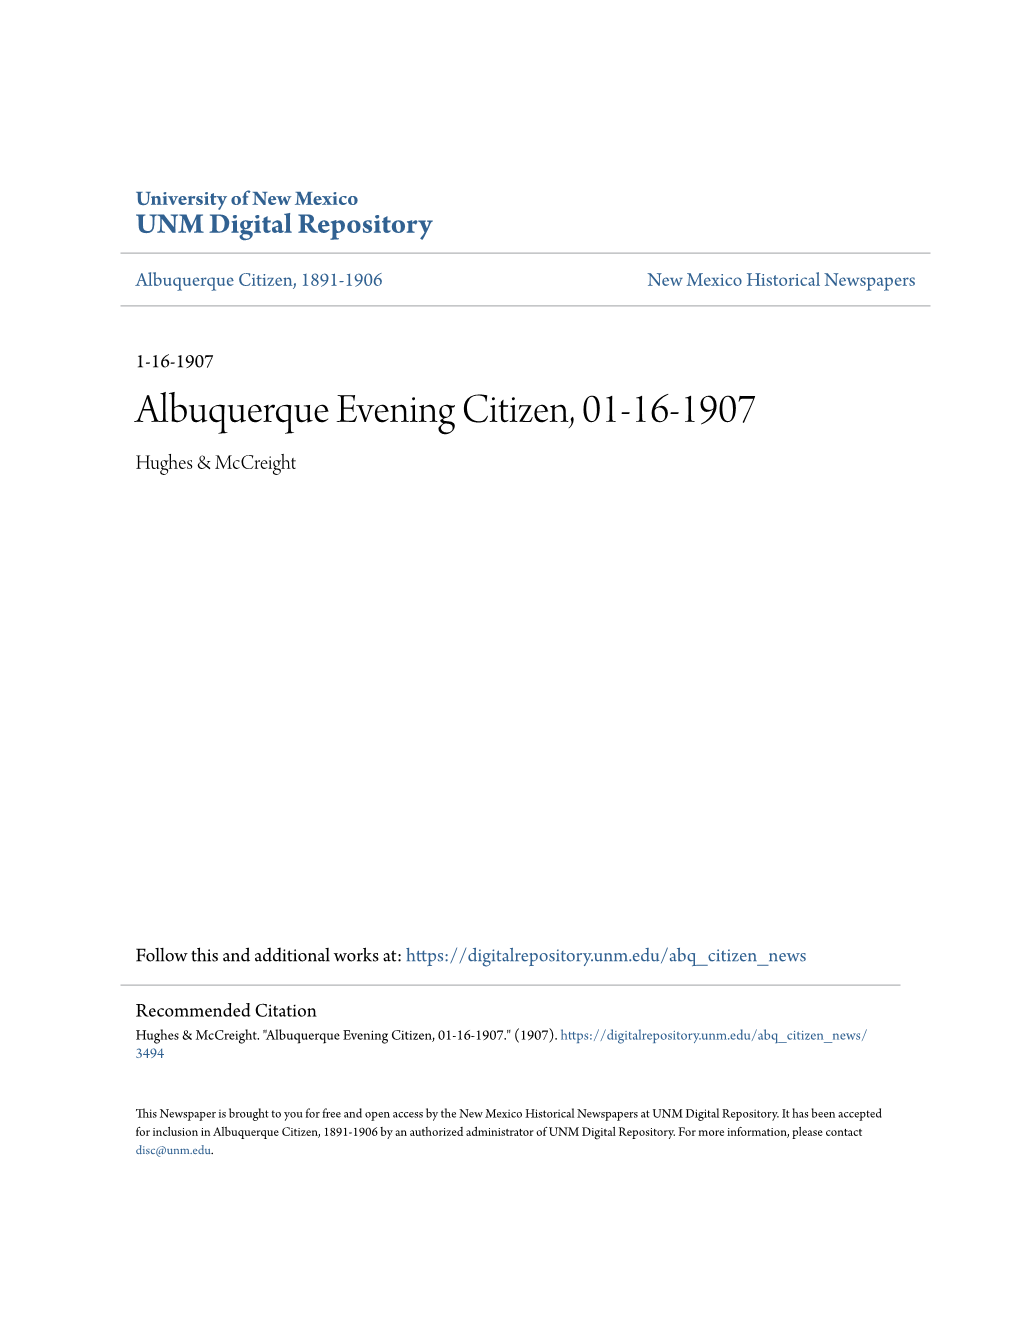 Albuquerque Evening Citizen, 01-16-1907 Hughes & Mccreight